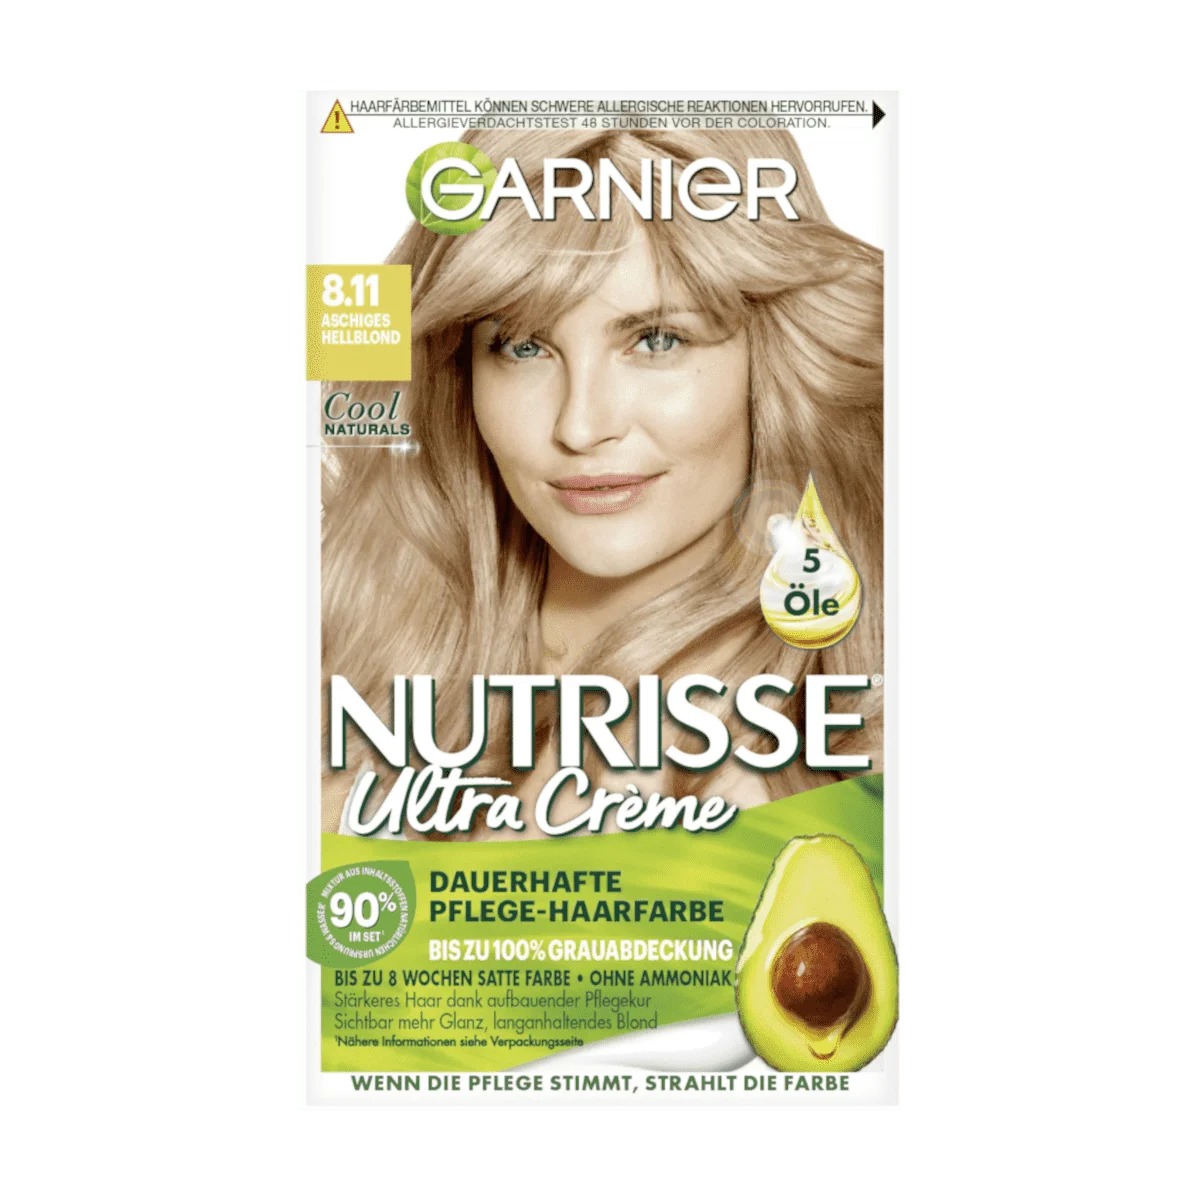 Garnier Nutrisse Ultra Creme Dauerhafte Pflege-Haarfarbe Nr. 8.11 Aschiges Hellblond, 1 Stk